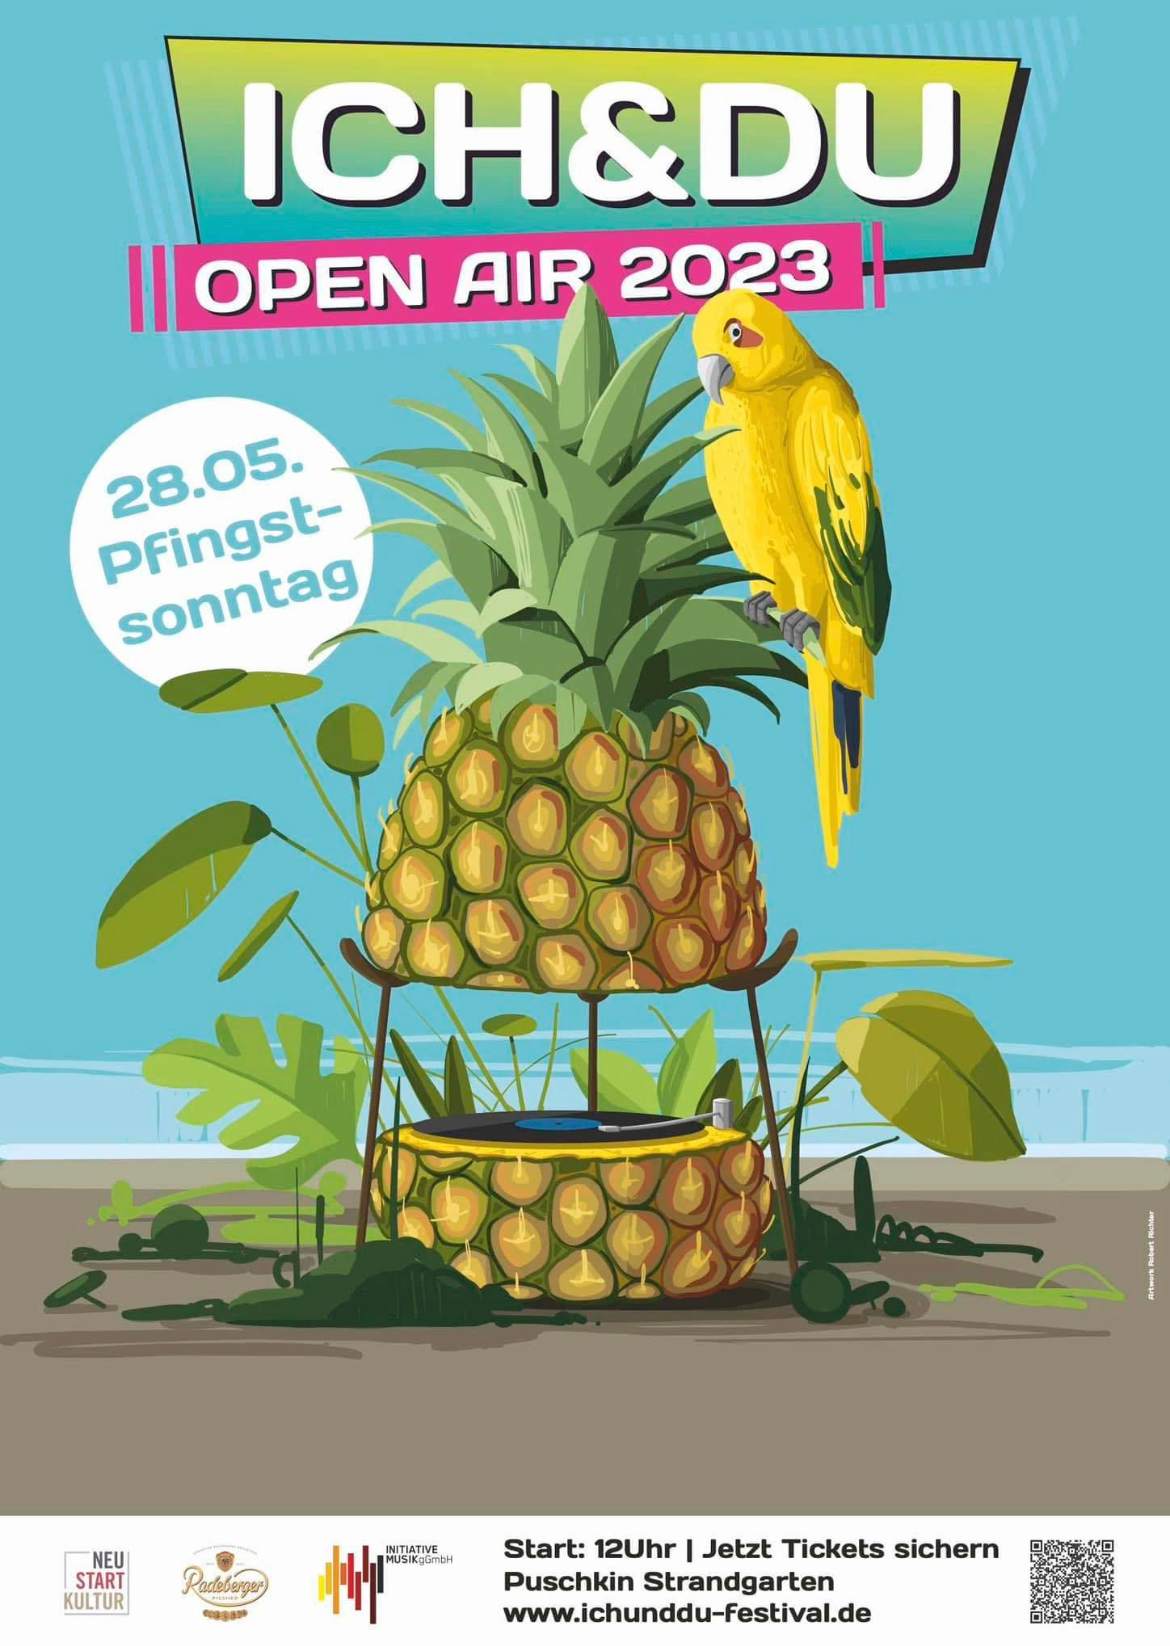 Ich & Du Open Air 2023 - フライヤー表